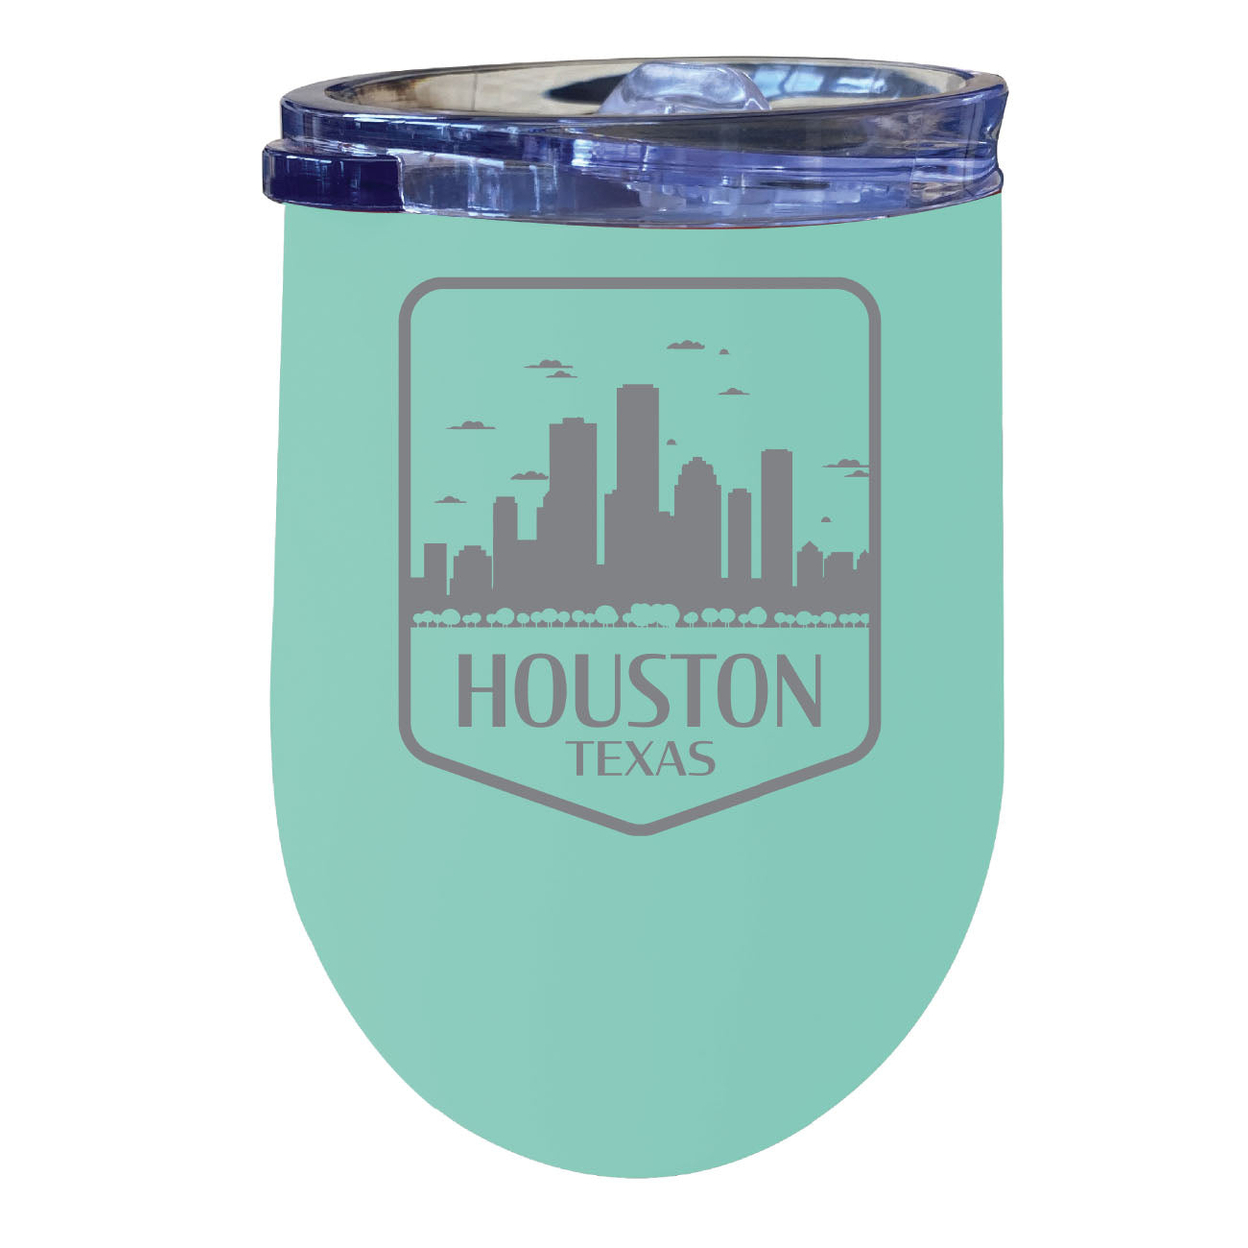 Houston Texas Souvenir 12 Oz Engraved Insulated Wine Stainless Steel Tumbler - Seafoam,,Single Unit